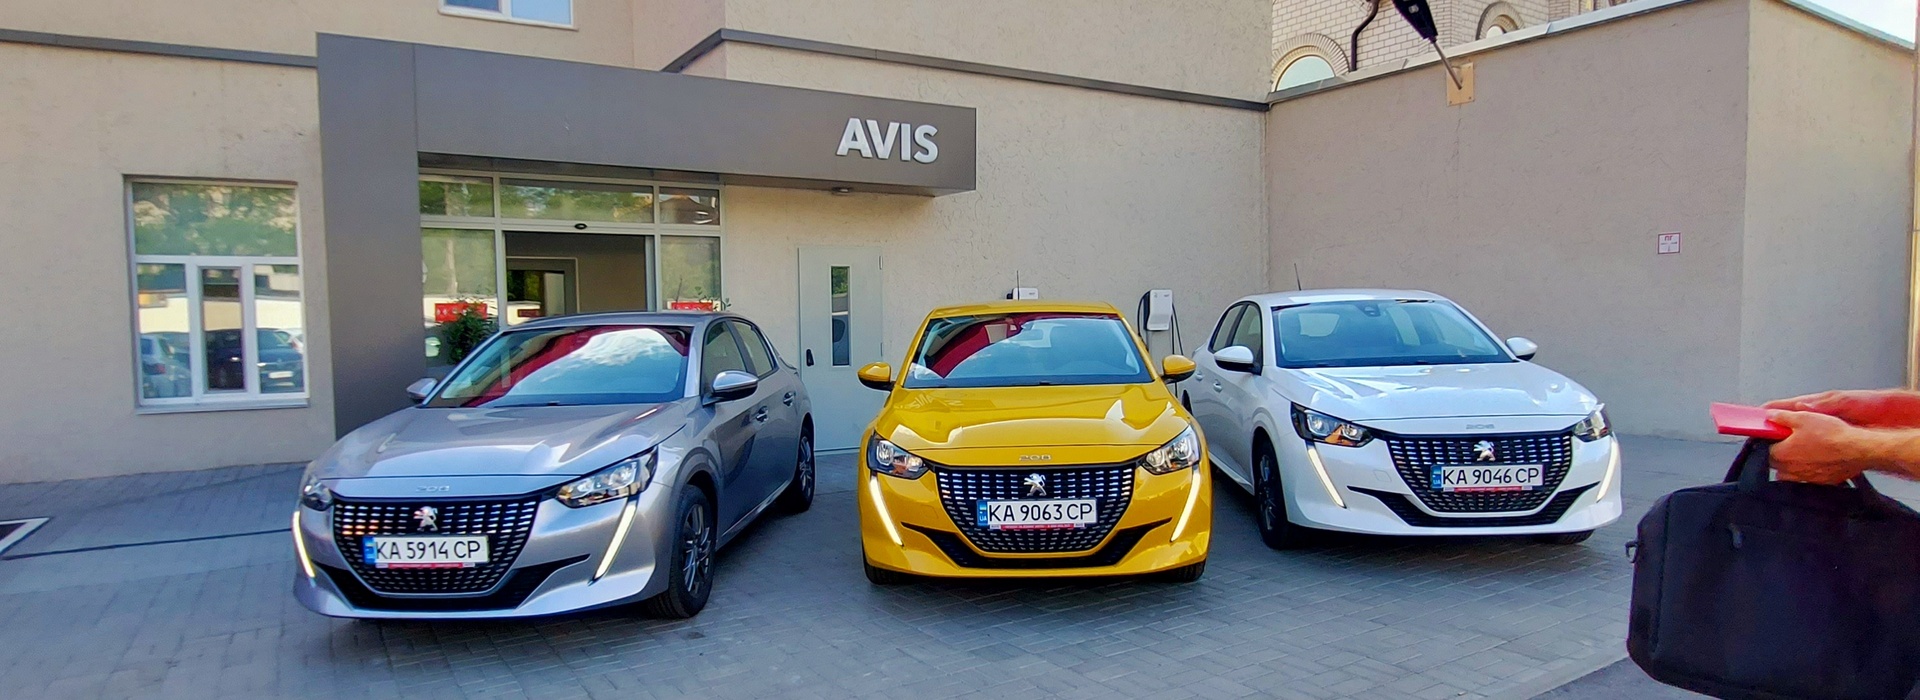 Car Rental Avis Ukraine Upgrades Almost 30% of Its Fleet